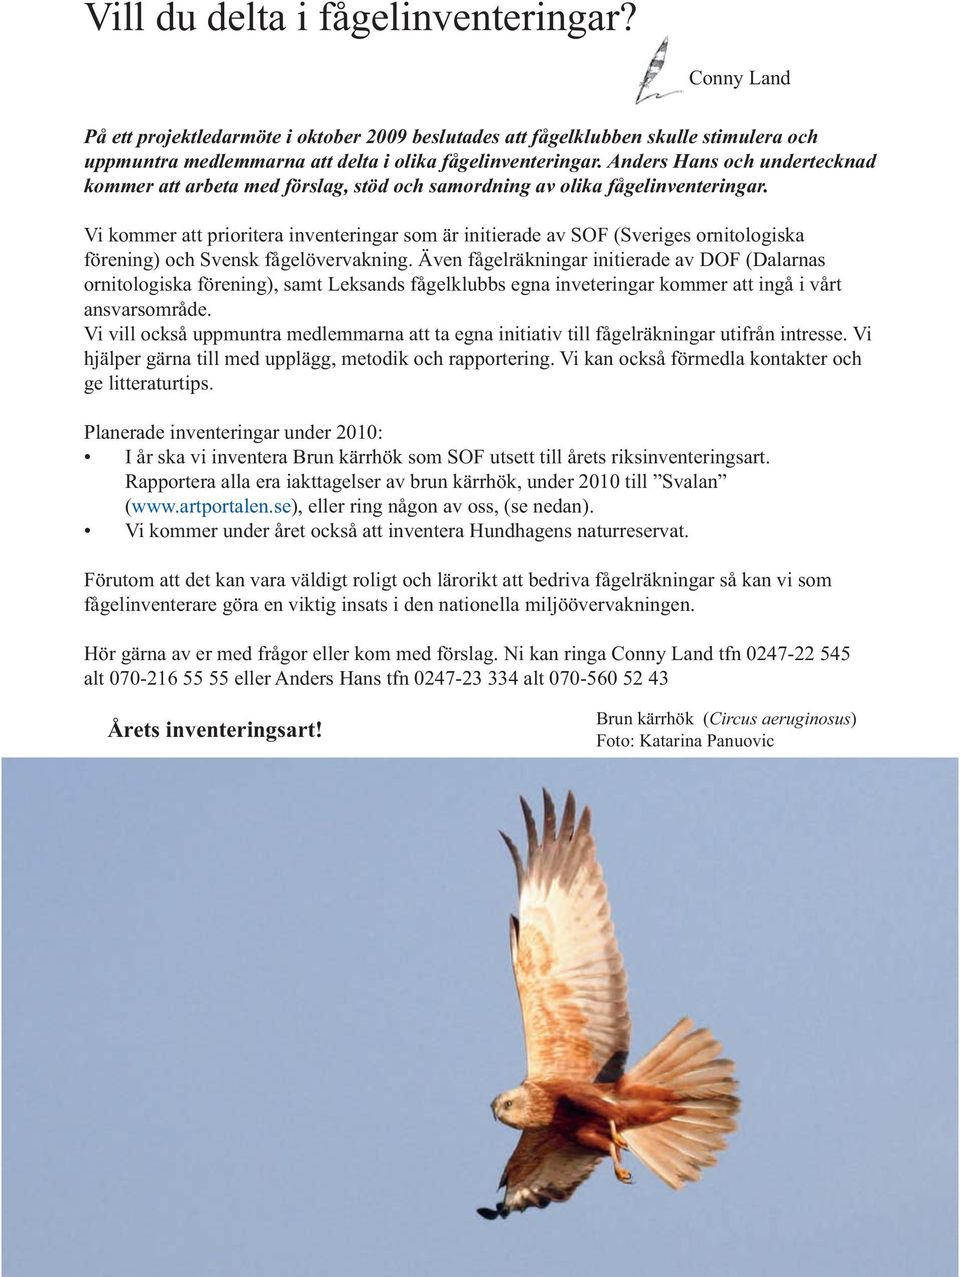 Vi kommer att prioritera inventeringar som är initierade av SOF (Sveriges ornitologiska förening) och Svensk fågelövervakning.